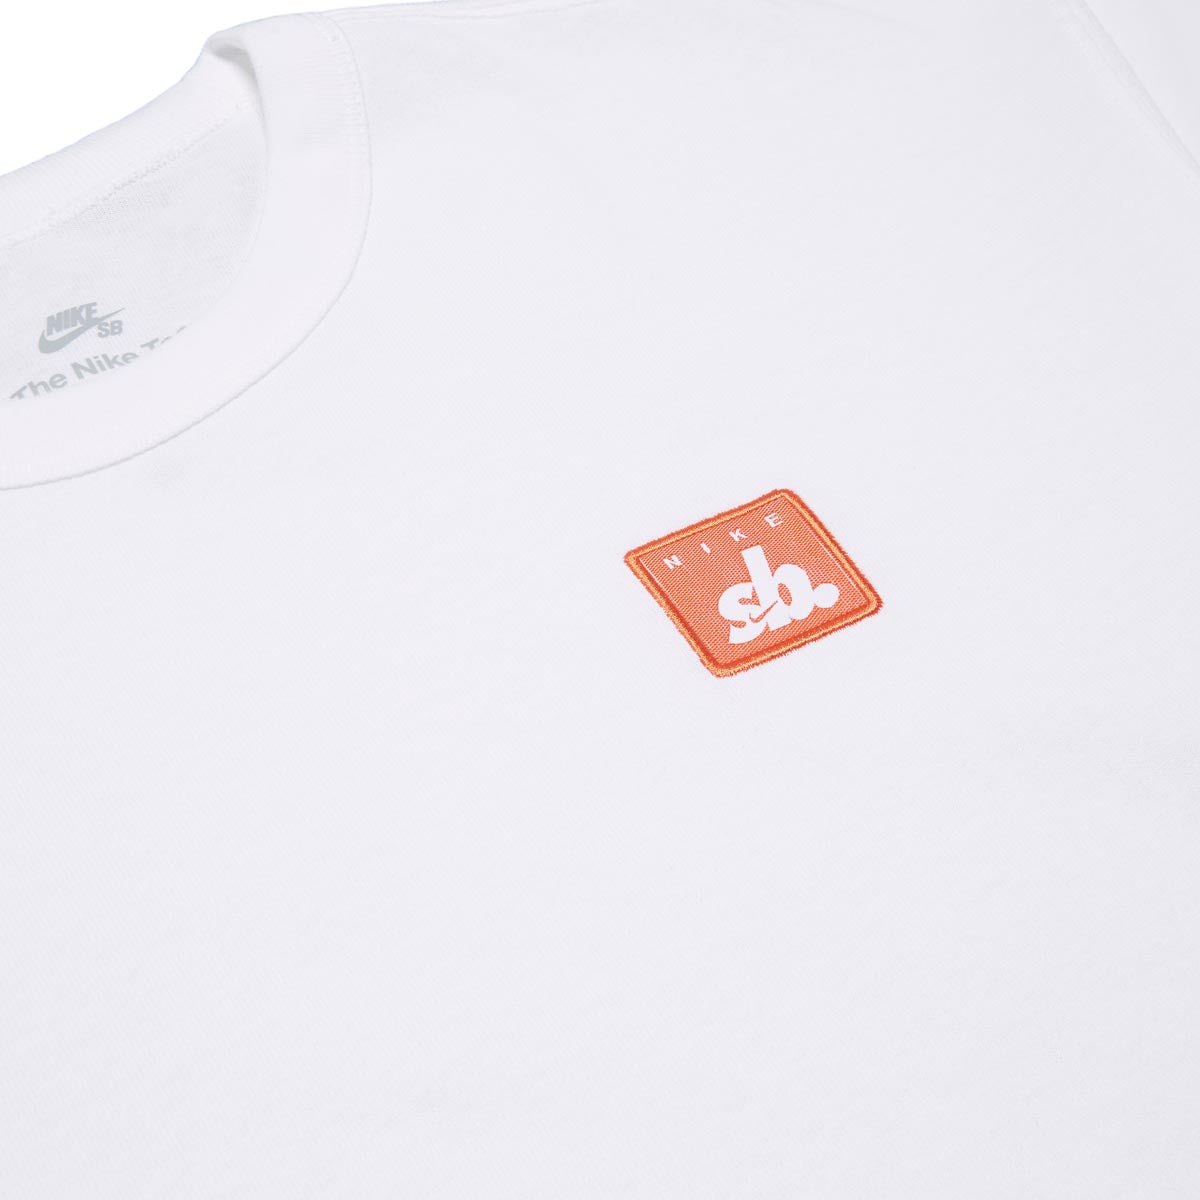 Nike SB Square T-Shirt - White image 2